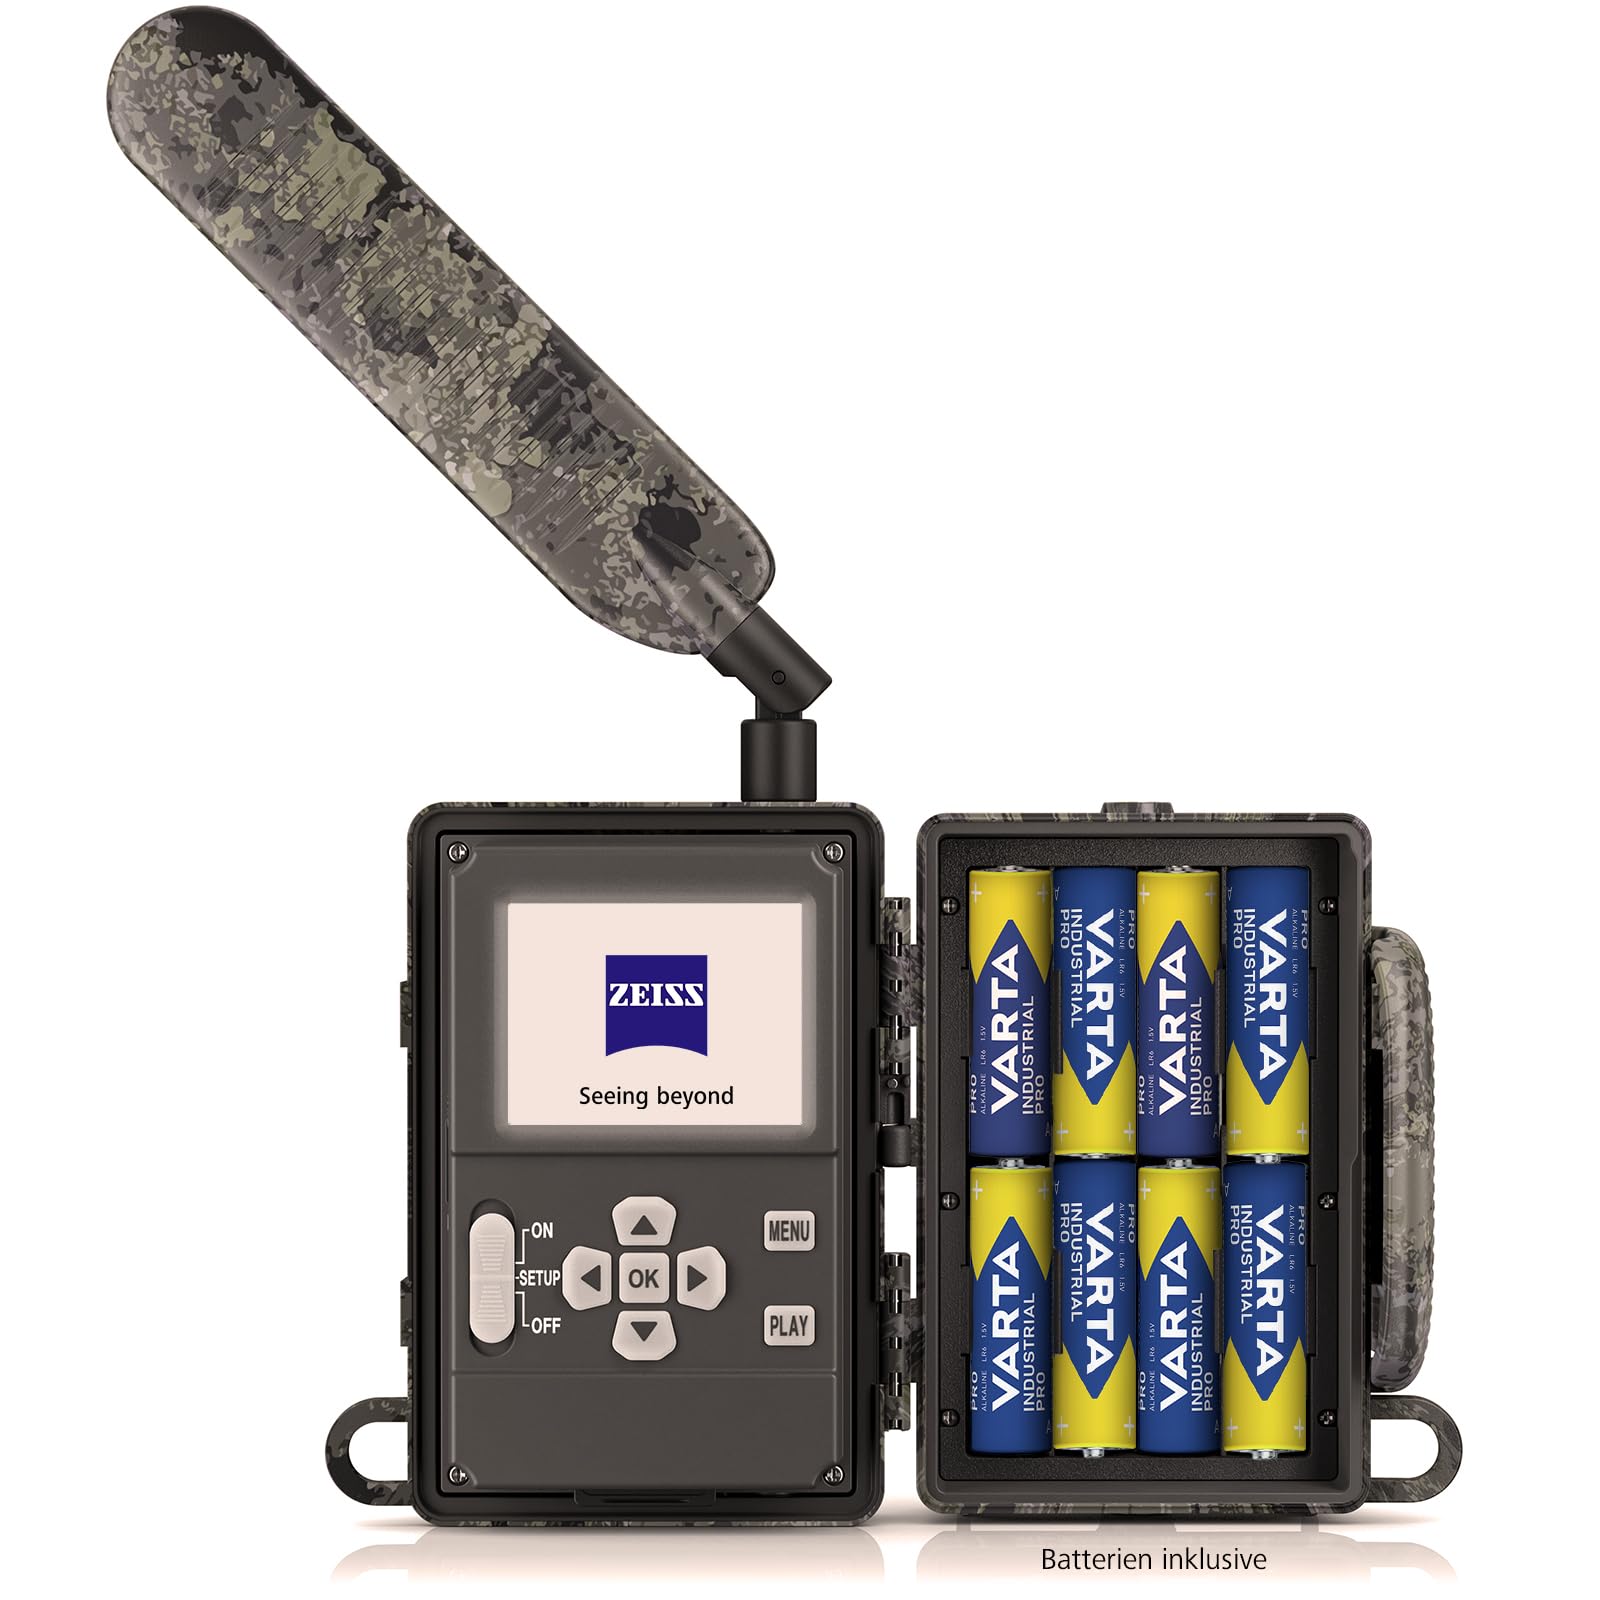 Zeiss Secacam 5 60° – 4G Profi-Wildkamera mit Handyübertragung, Bewegungsmelder, 60°-Winkel, SIM Karte, 32 GB Speicherkarte und Batterien